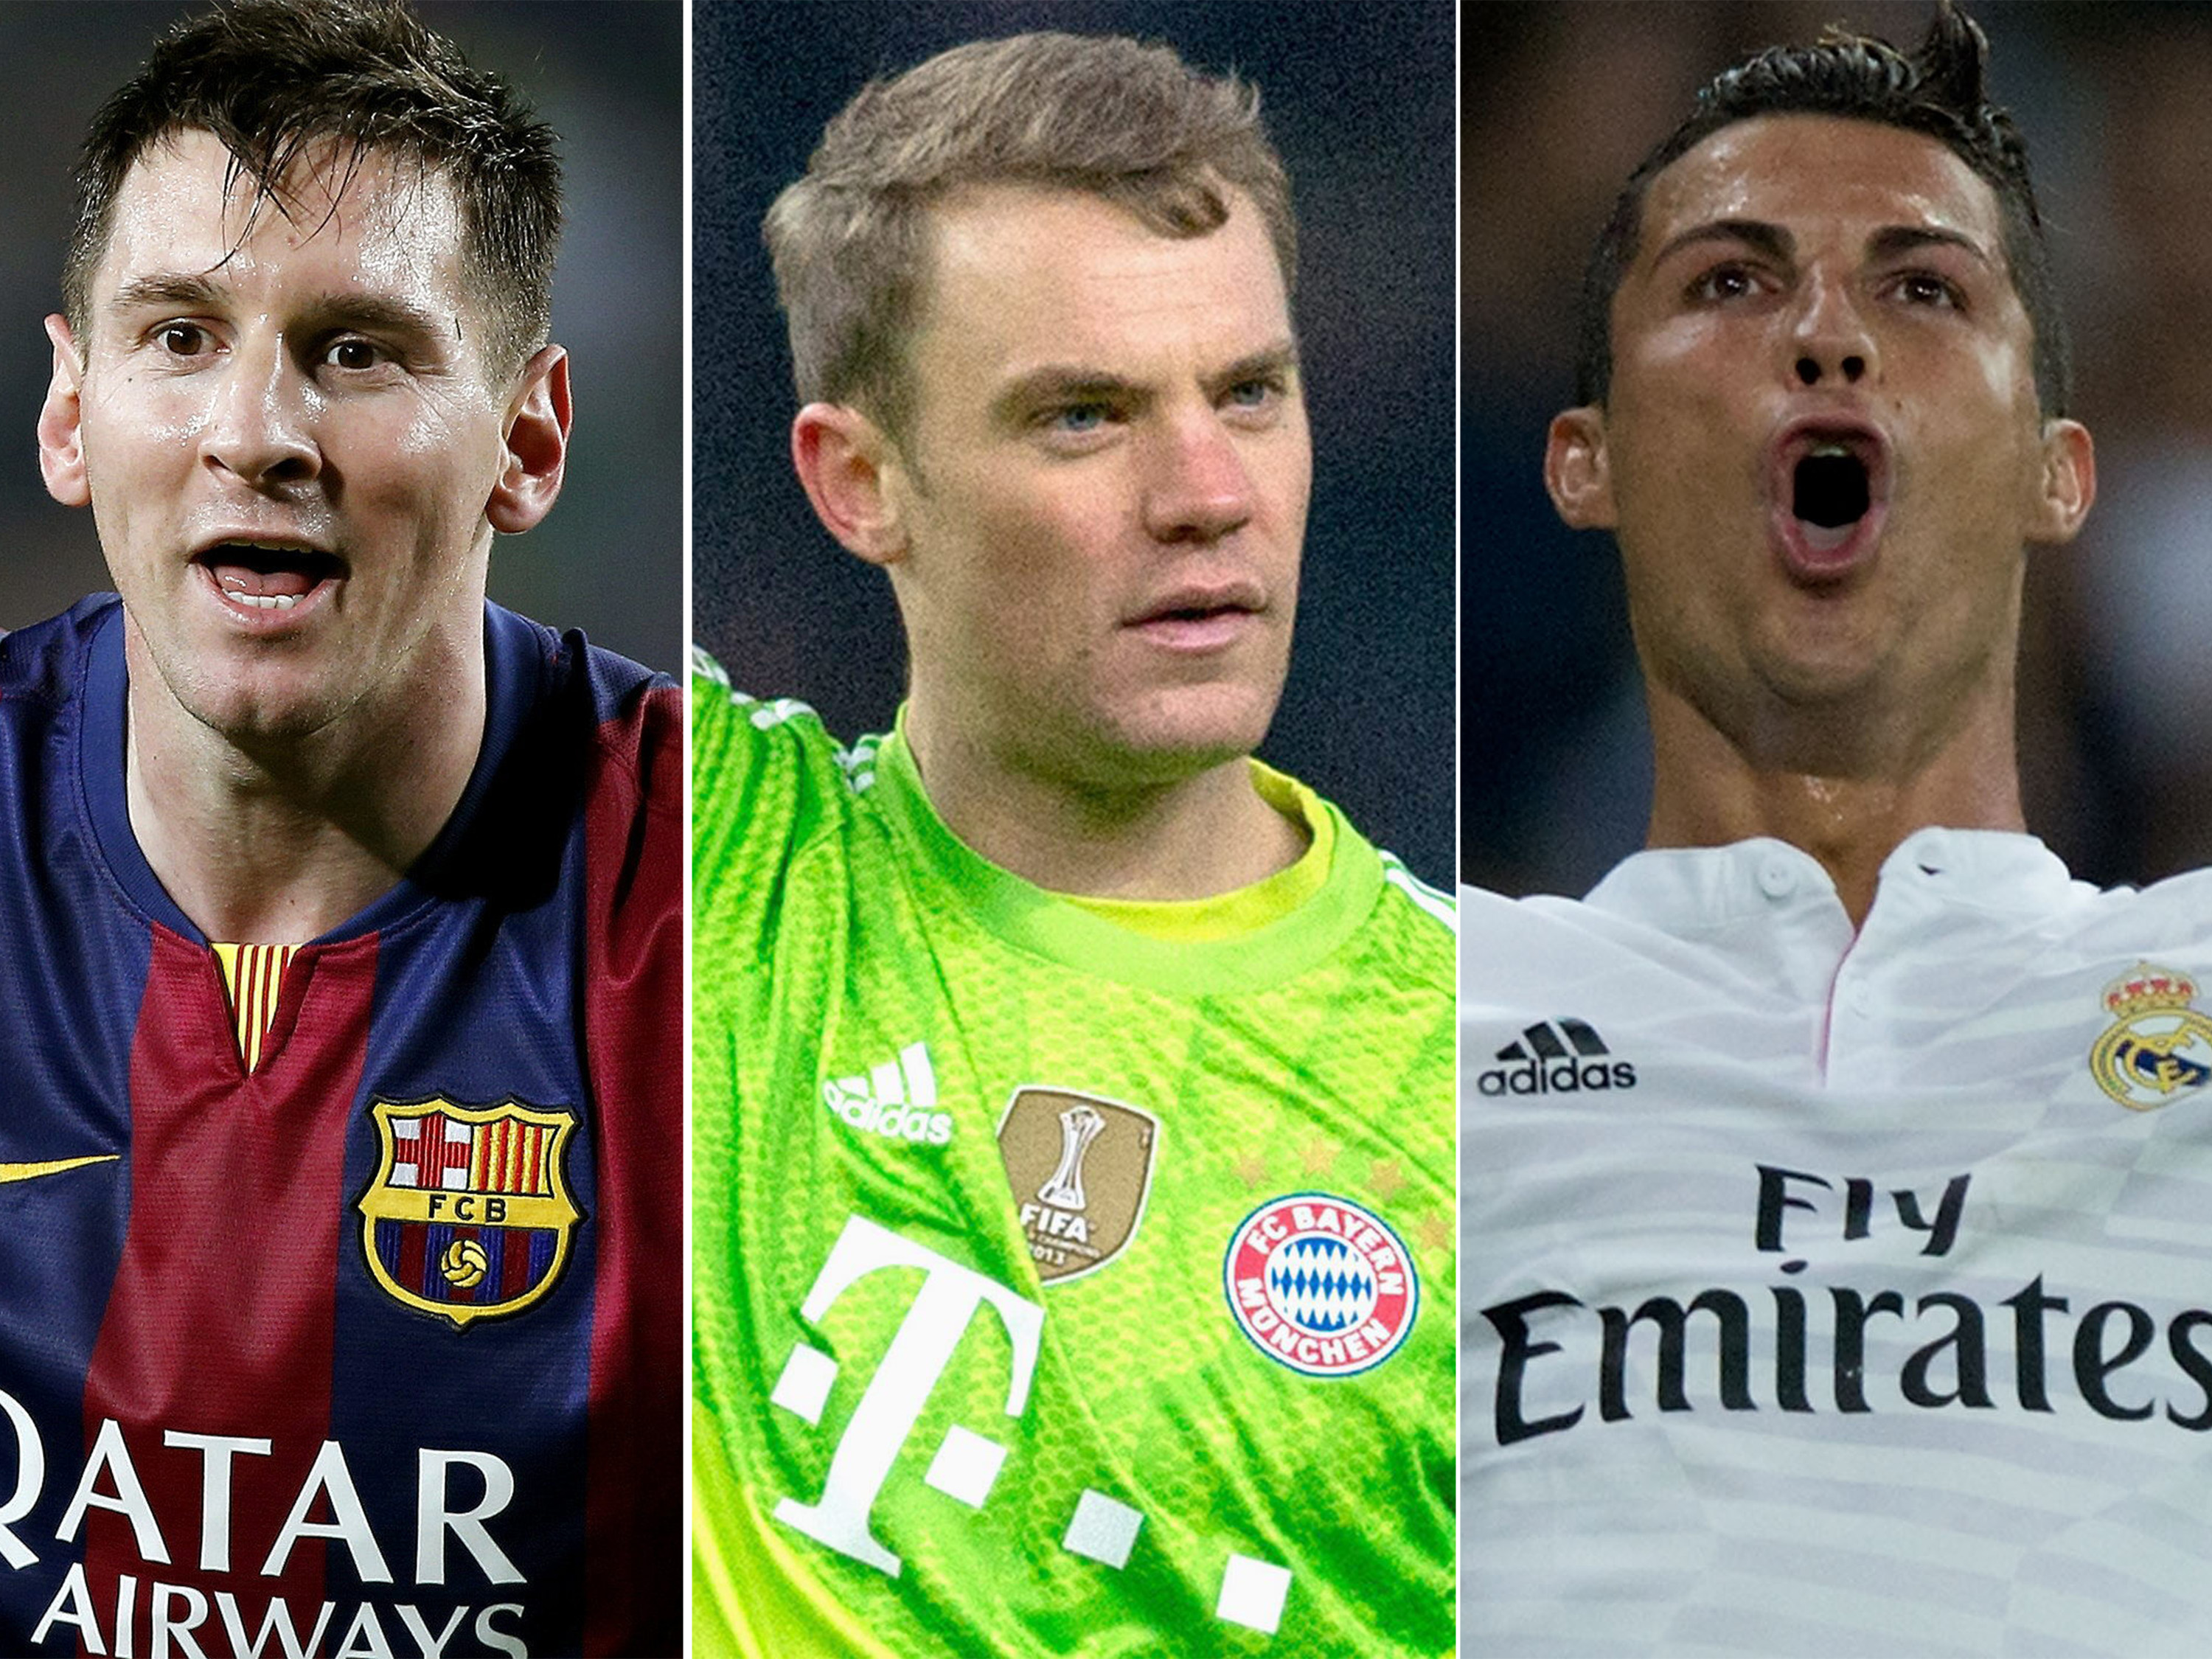 Neuer é eleito o melhor goleiro do mundo; veja todos os vencedores